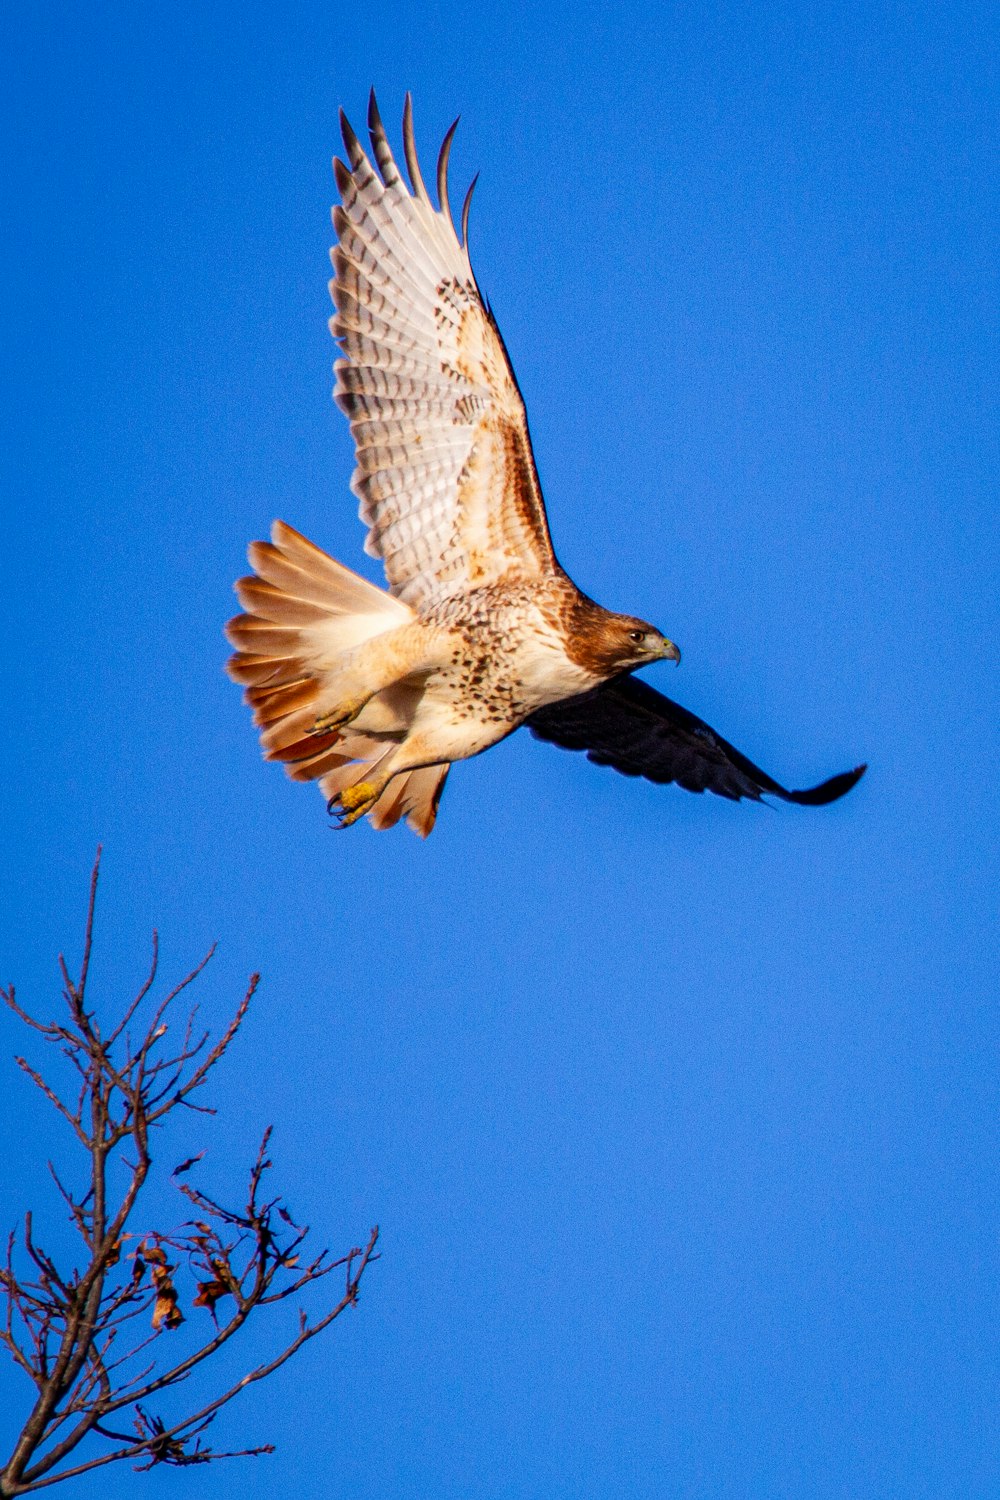 pájaro marrón y blanco volando bajo el cielo azul durante el día